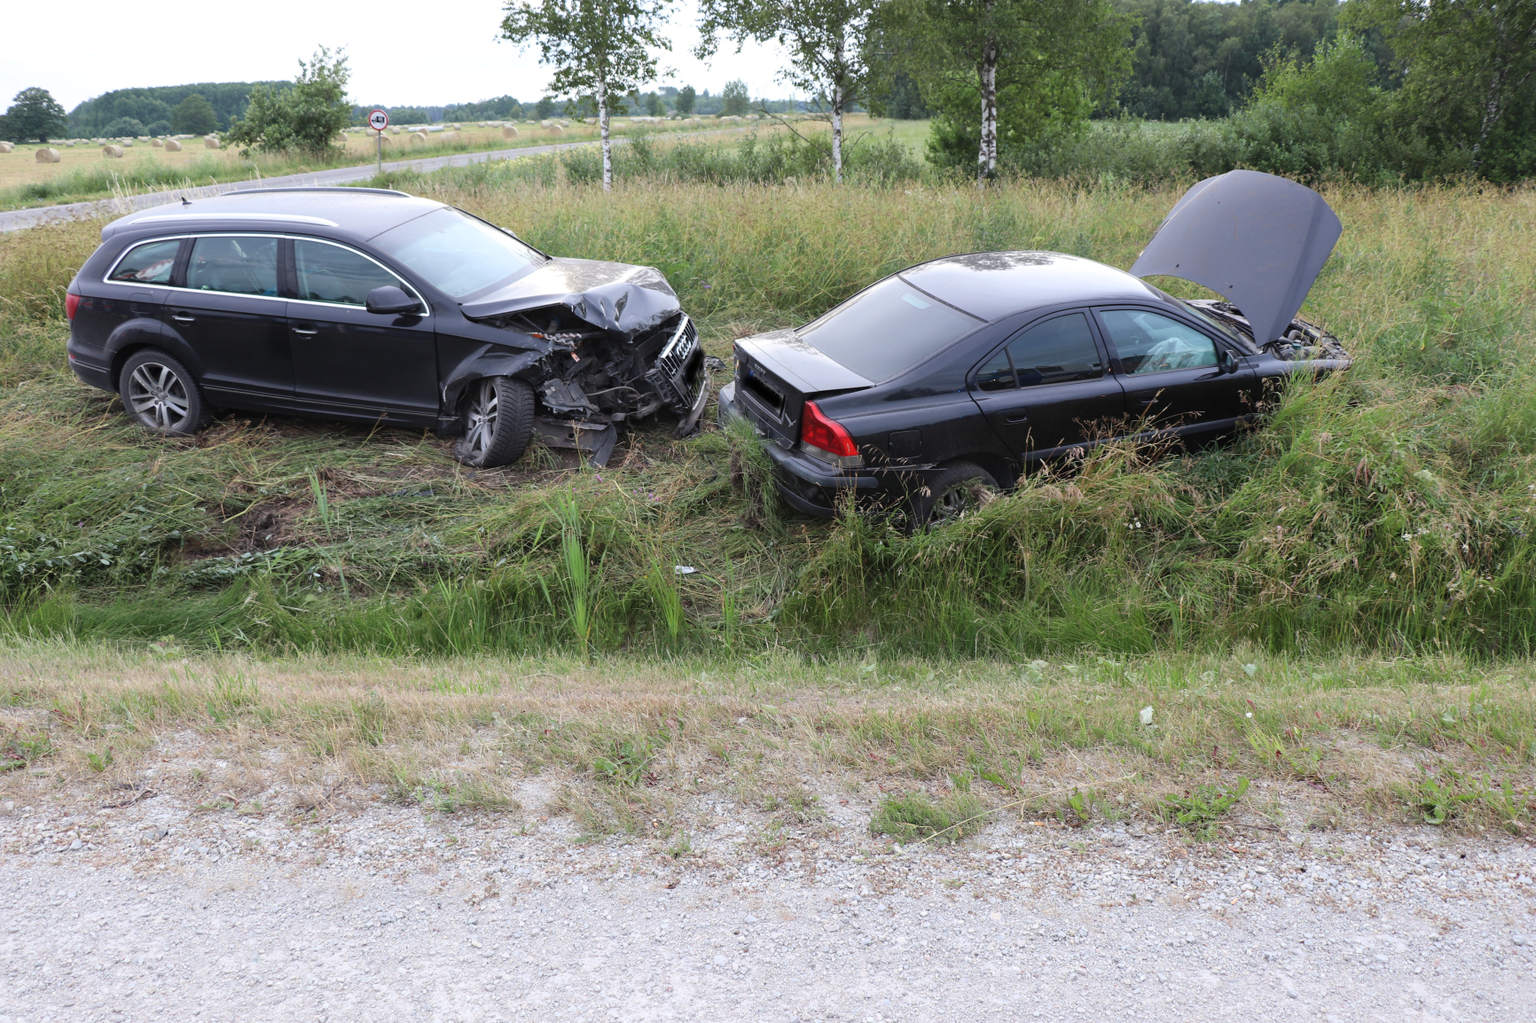 Via Baltical toimunud avariis oosalenud autodes viibis kokku viis inimest, kellest üks vajab haiglaravi.